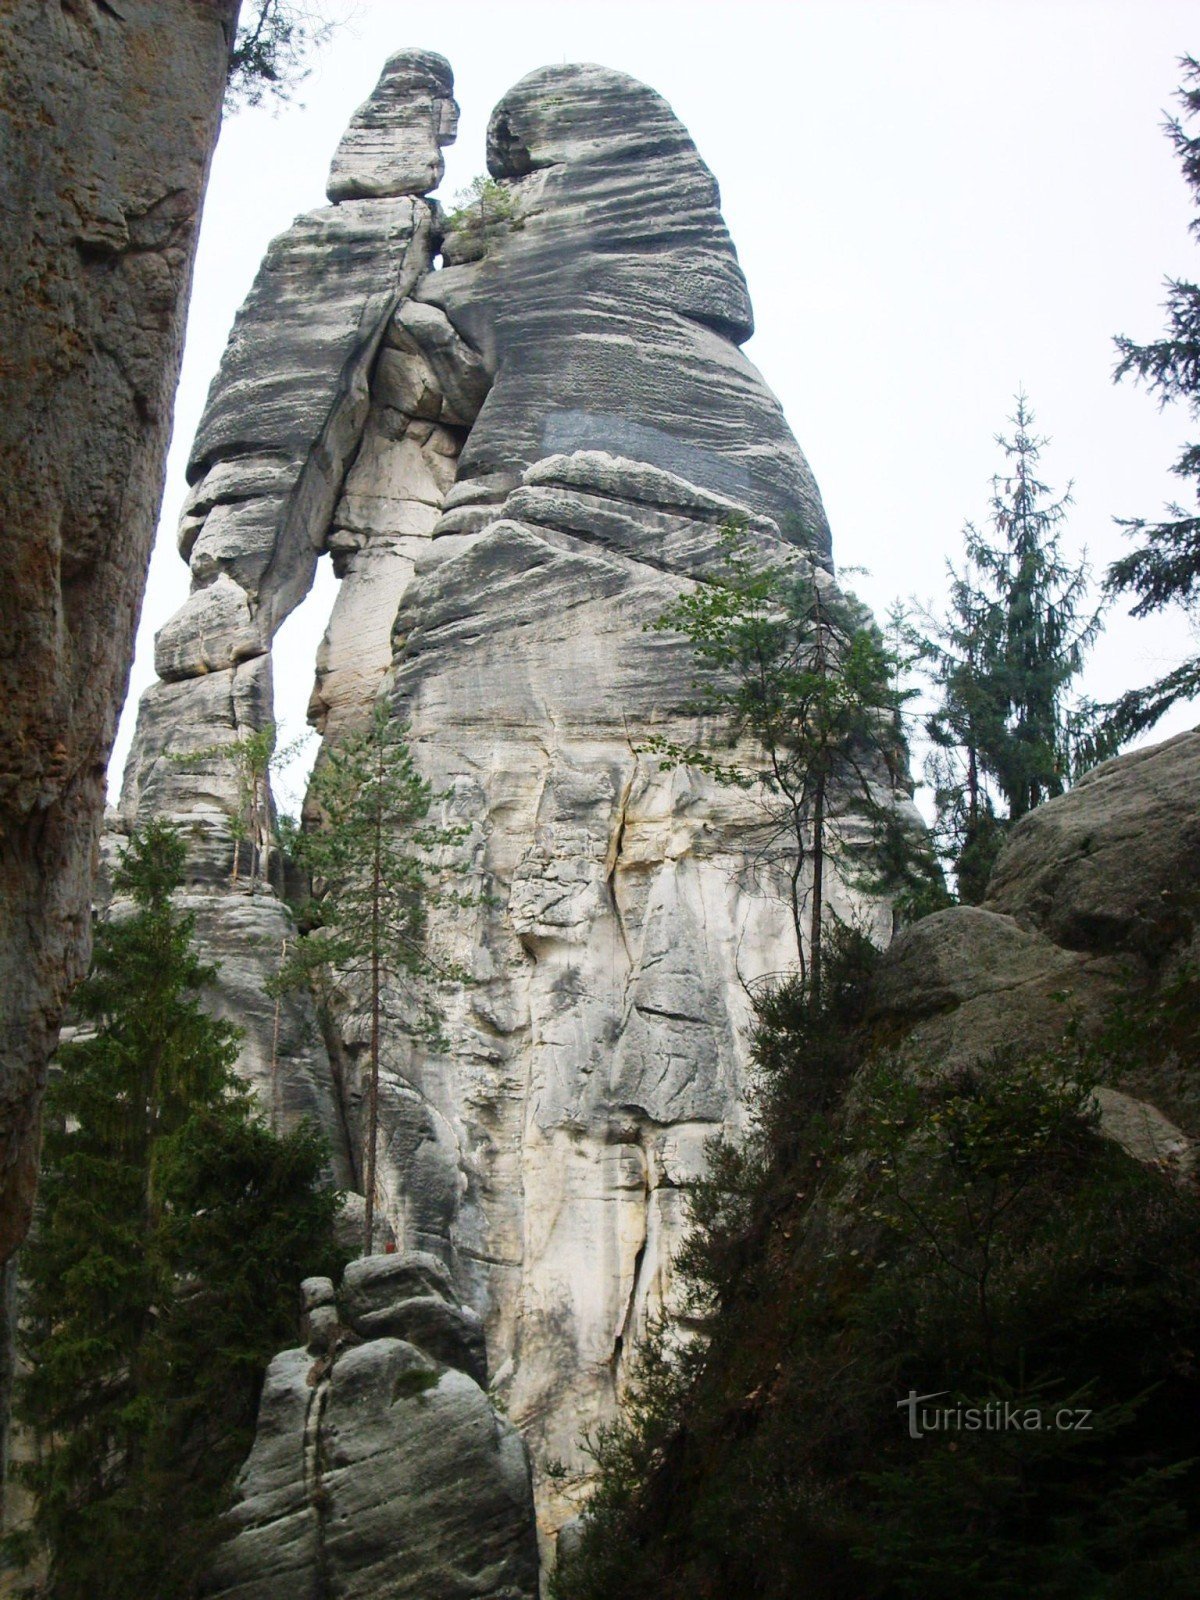 Milenci, die höchste Felsformation, 103 m